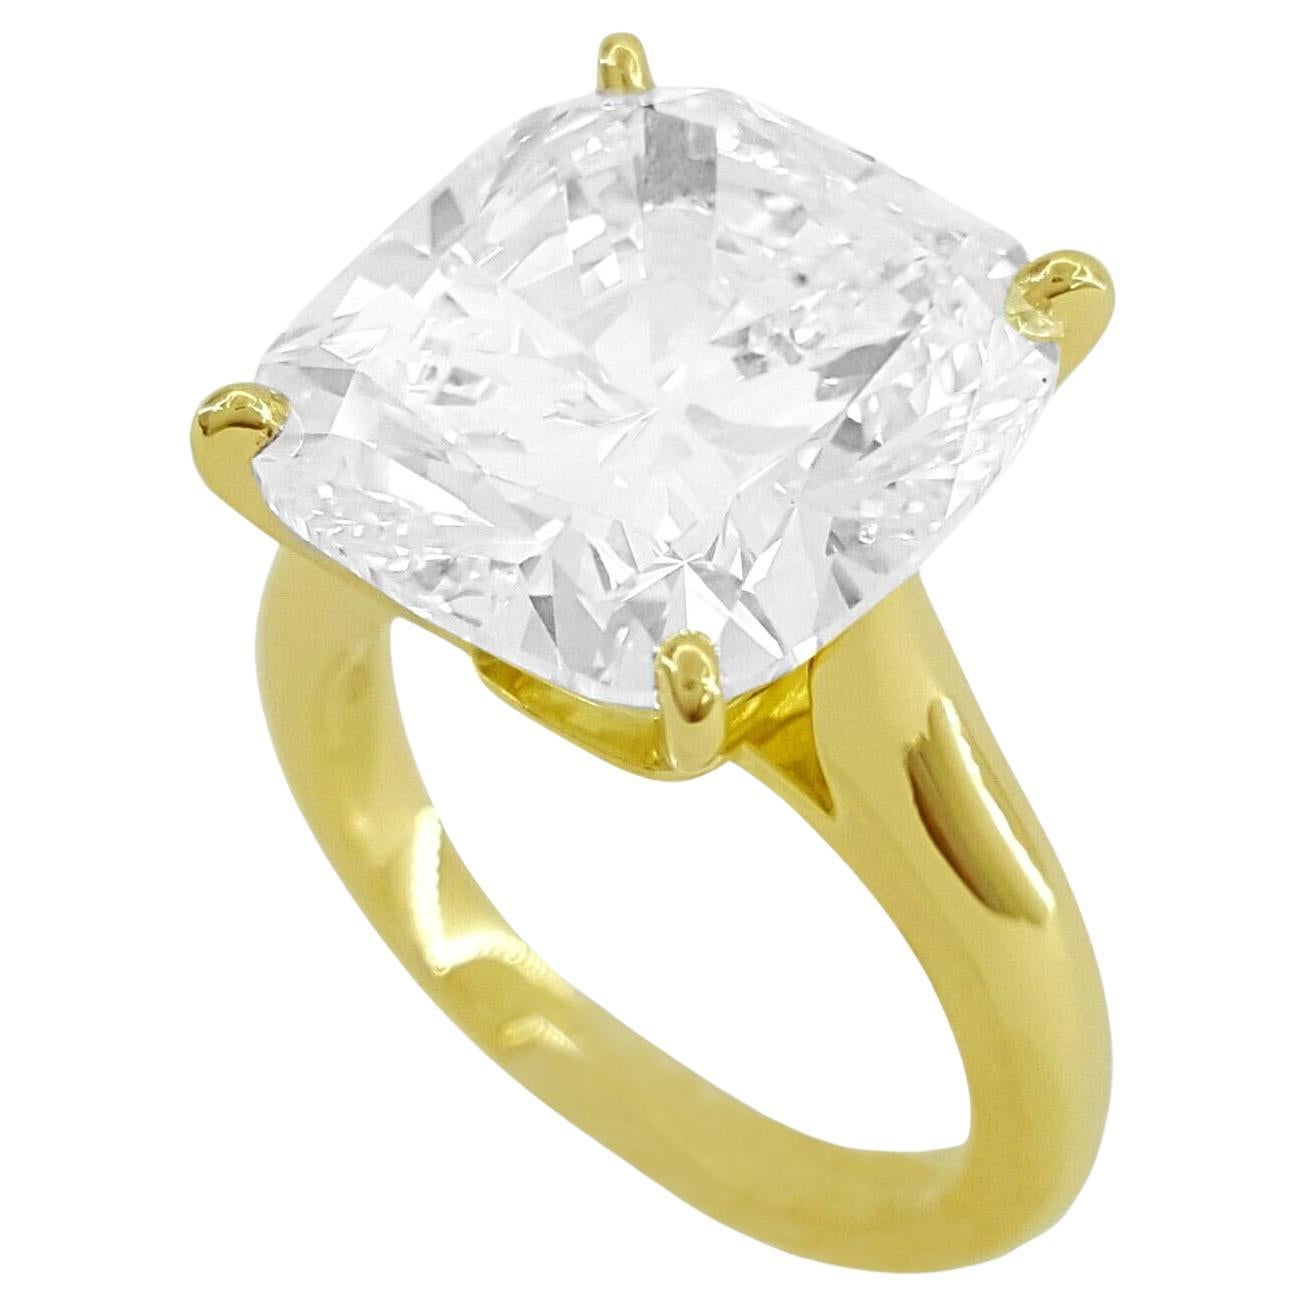  Cartier 1895 Kissen Brillantschliff Diamant Solitär Verlobungsring